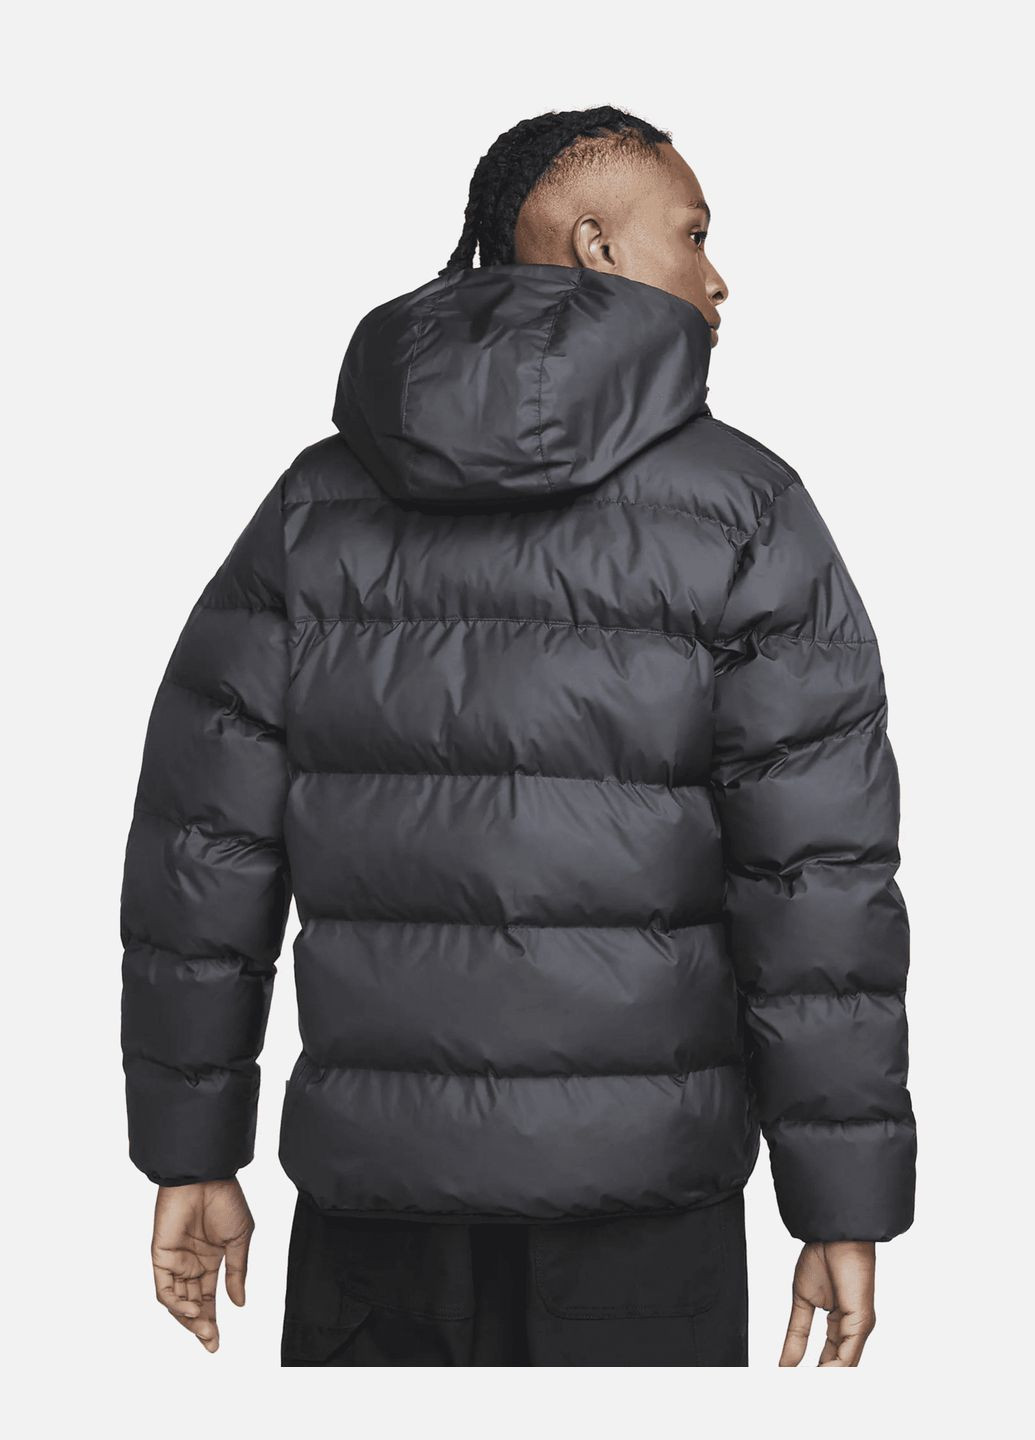 Черная демисезонная куртка мужская storm-fit windrunner primaloft fb8185-010 черная зима Nike